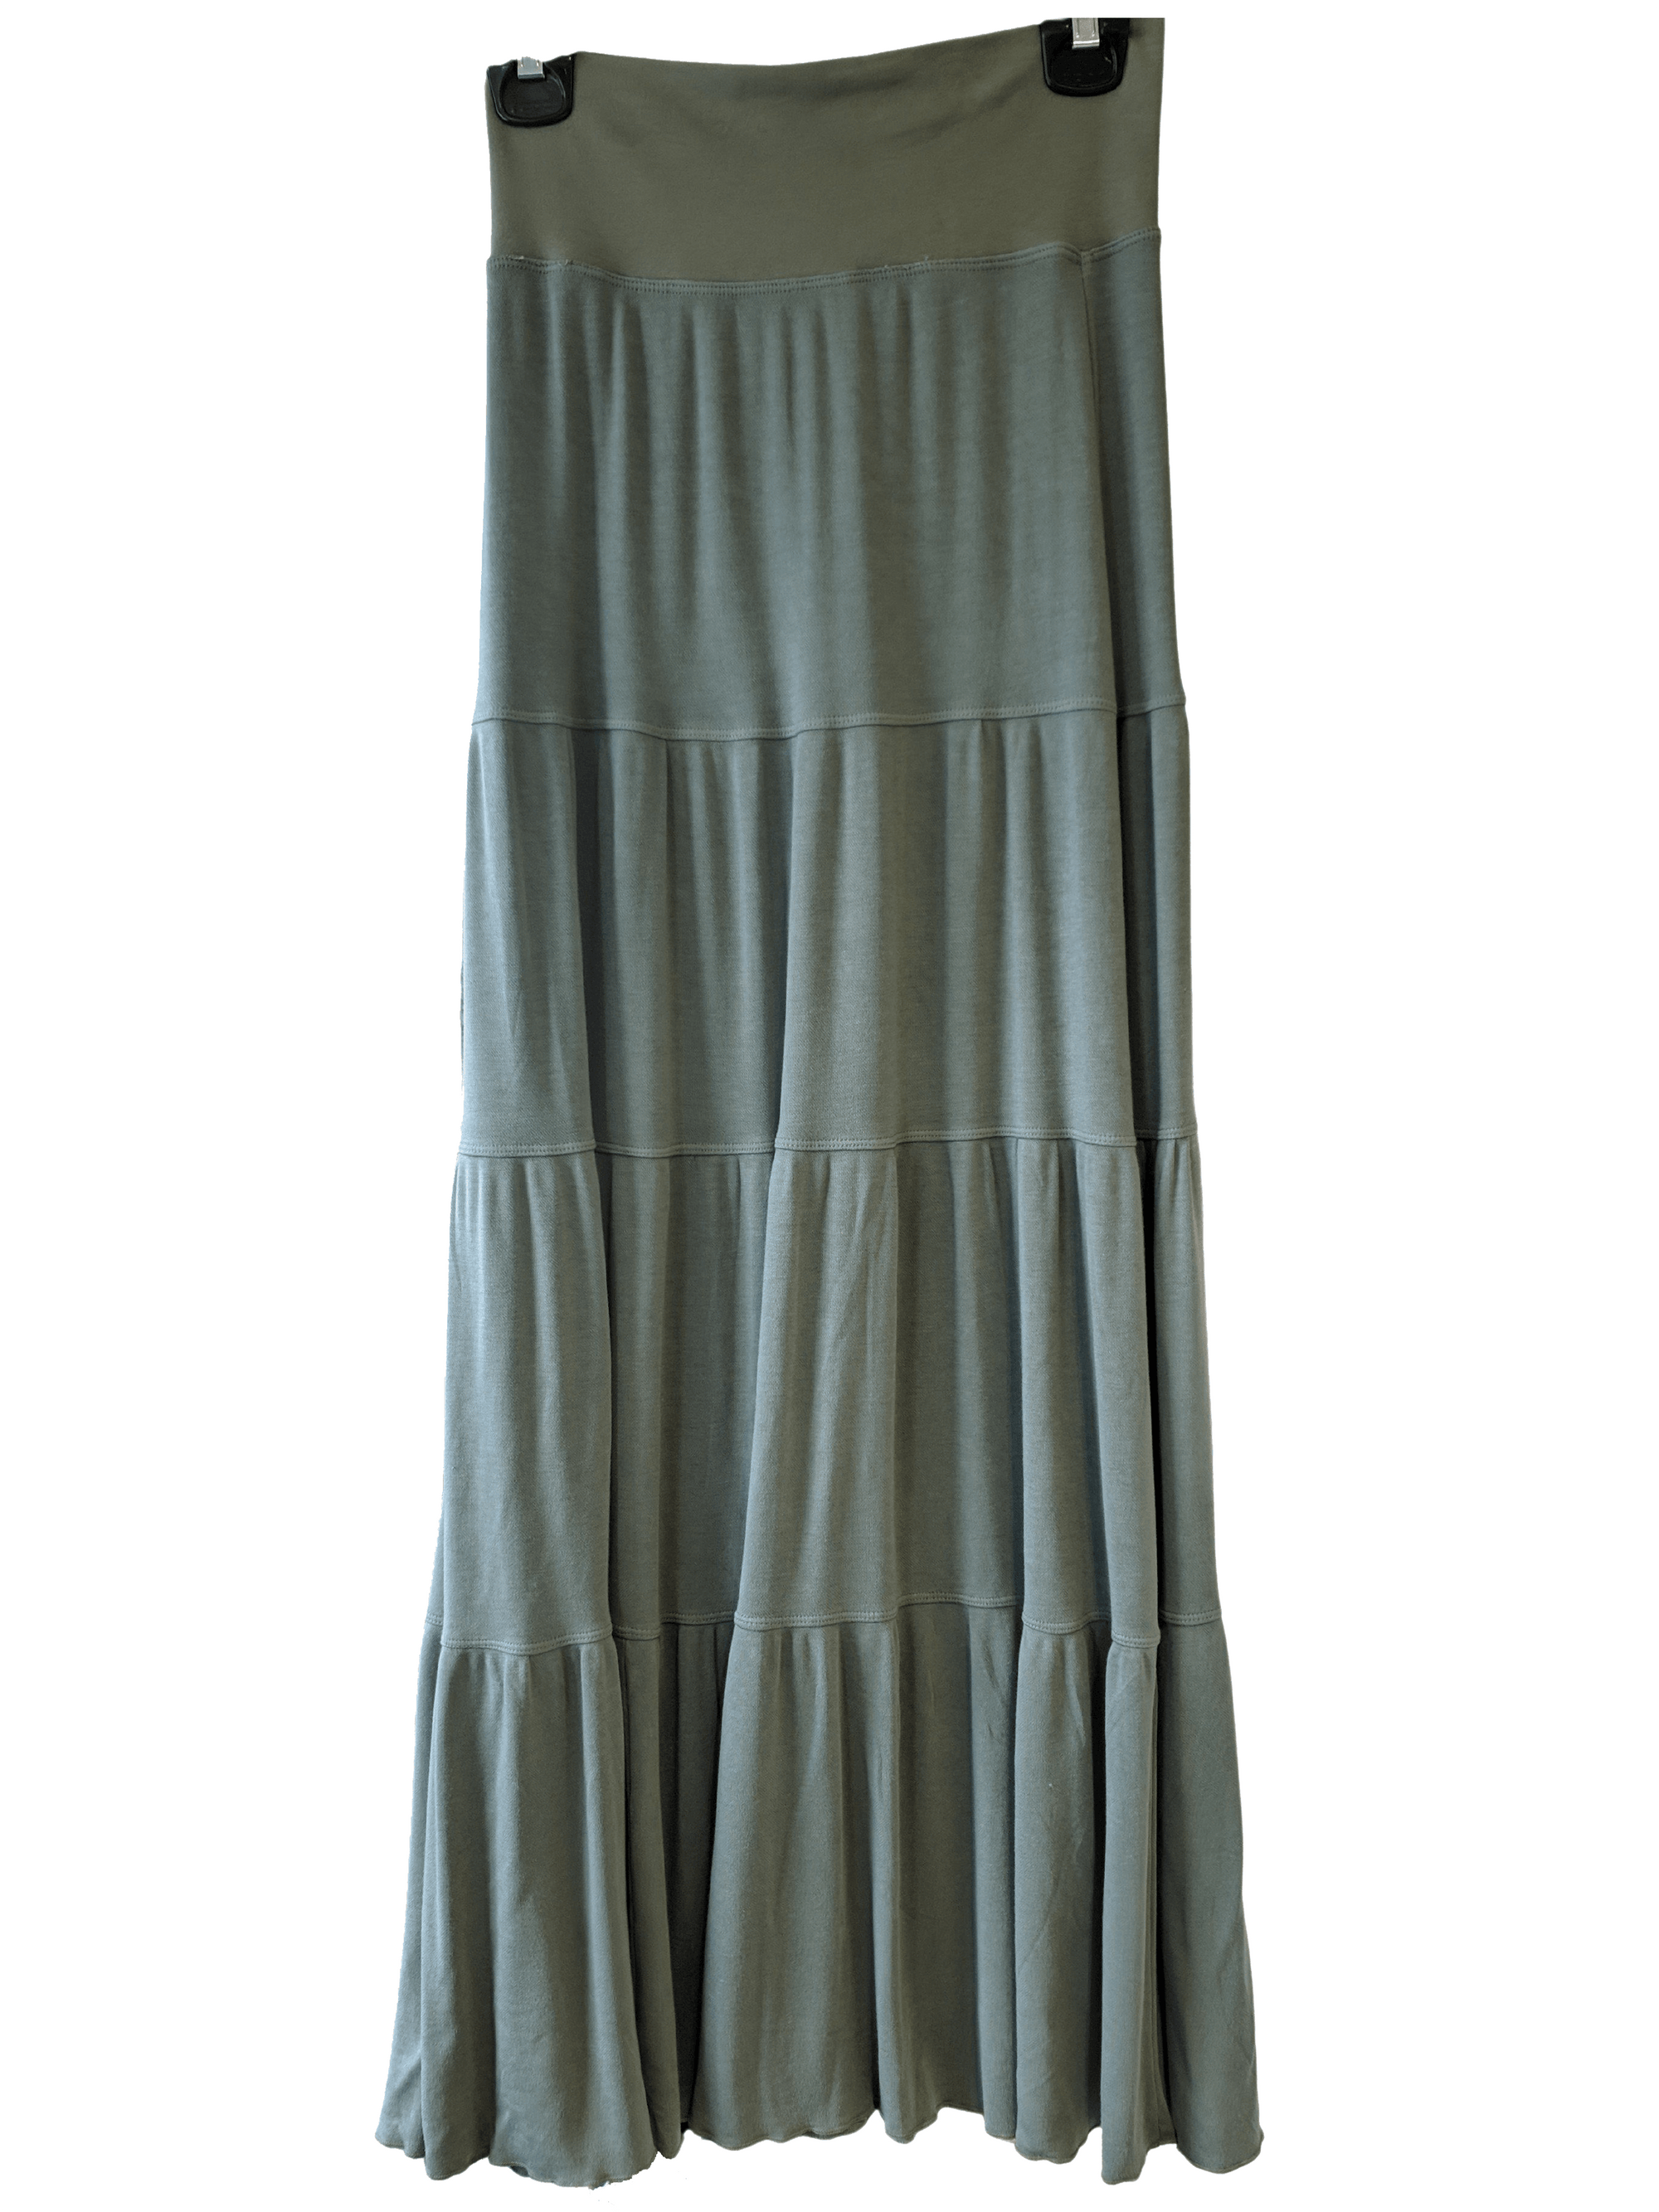 Hardtail Luxe Fleetwood Skirt-Skirt-Mementos